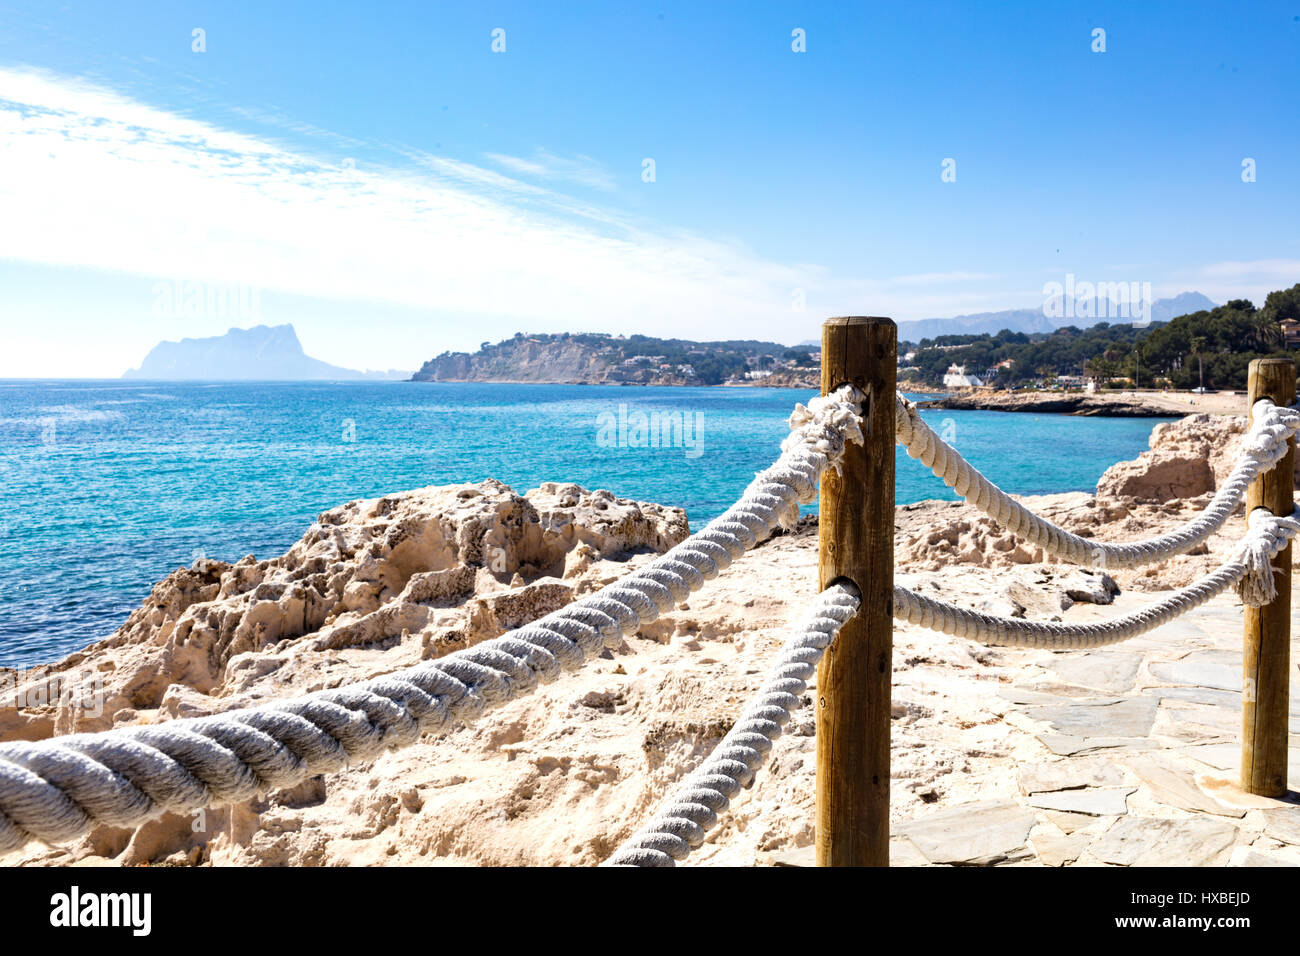 Costa mediterranea solo per andare a fare una passeggiata a piedi ascoltando le onde e la sensazione di sun. Foto scattata da moraira marciapiede Foto Stock